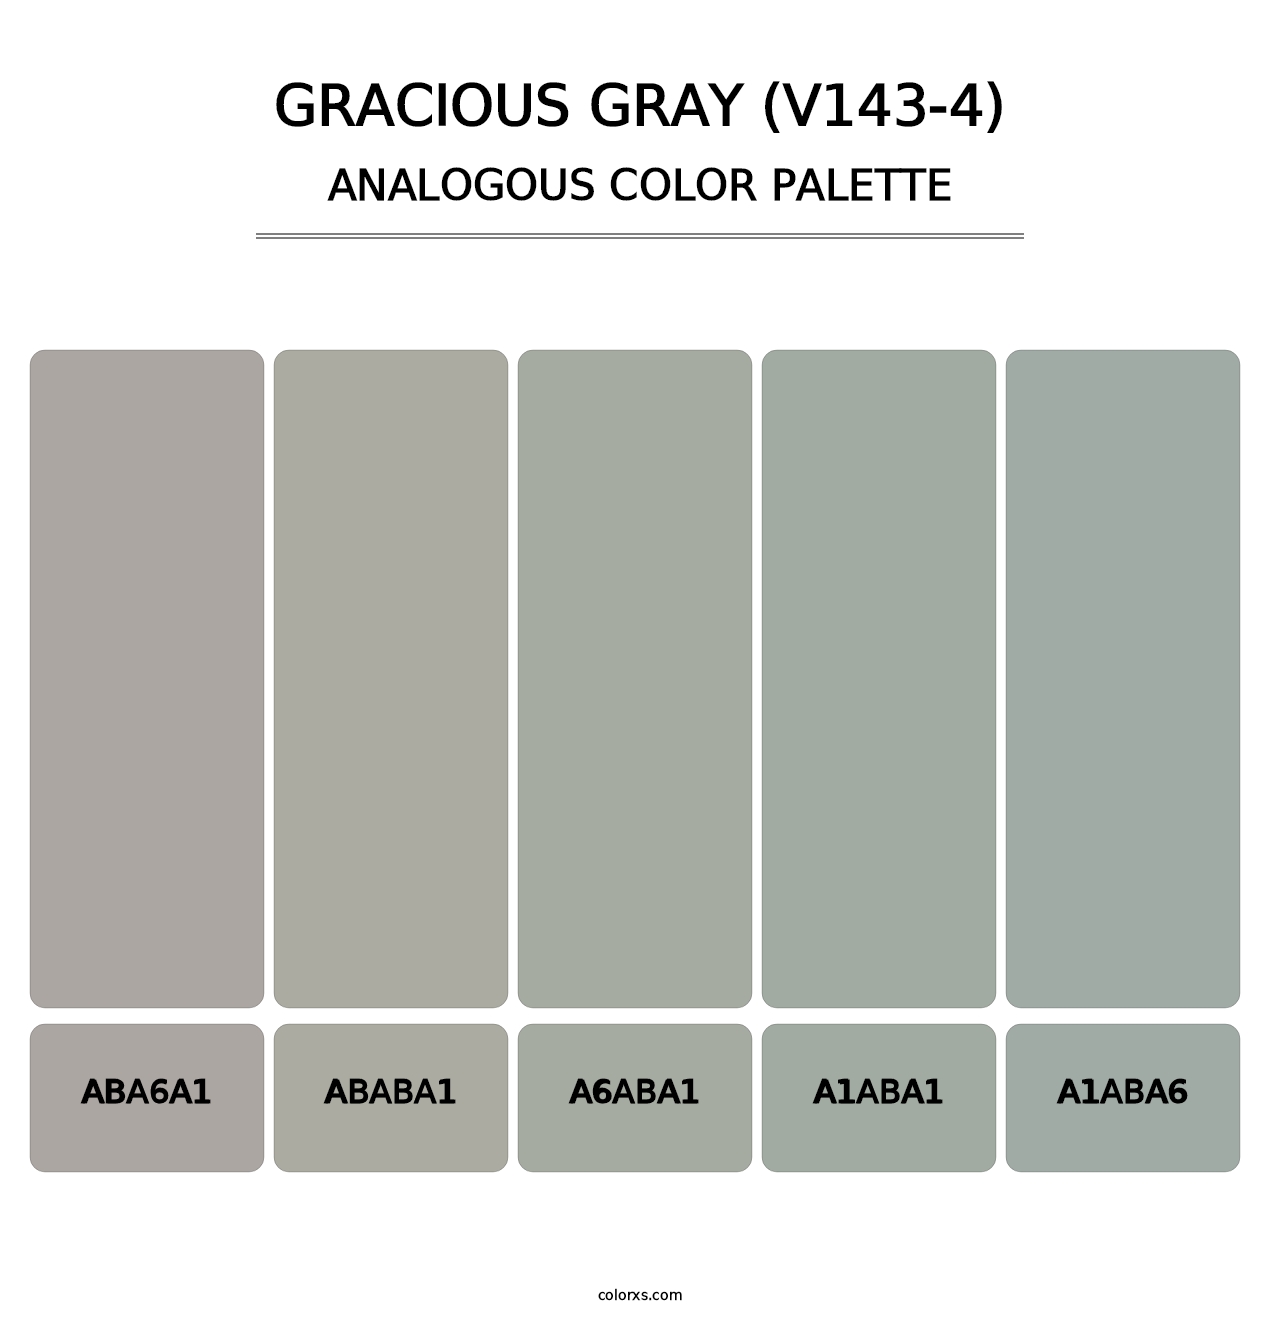 Gracious Gray (V143-4) - Analogous Color Palette